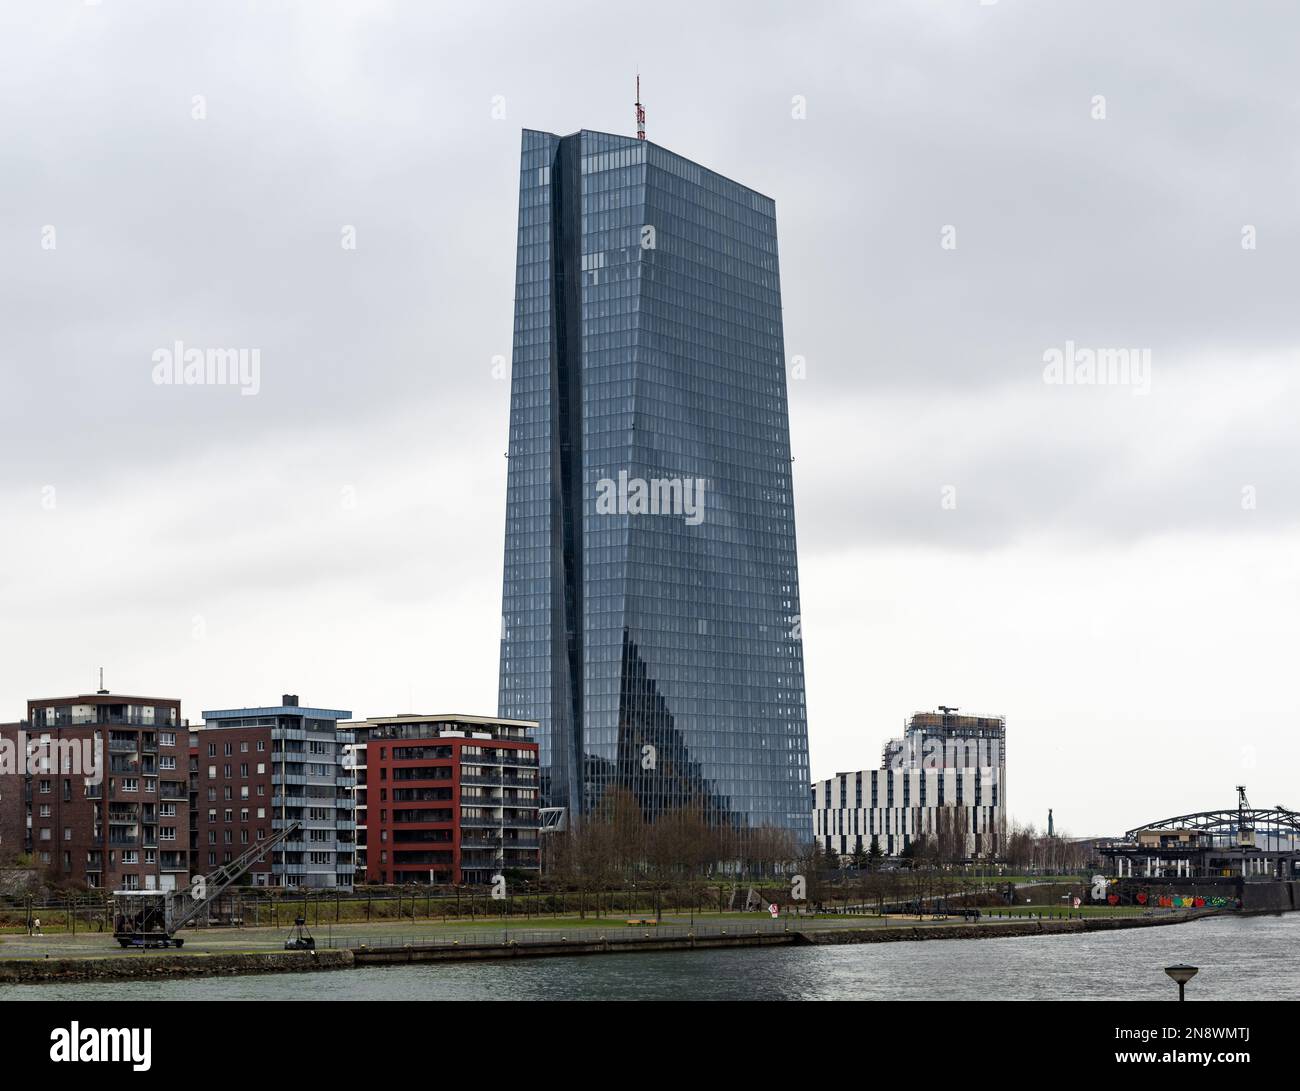 ECB Tower vicino al fiume meno. Grattacielo della Banca centrale europea. L'edificio degli uffici nello skyline vicino ad altre case in citta'. Foto Stock